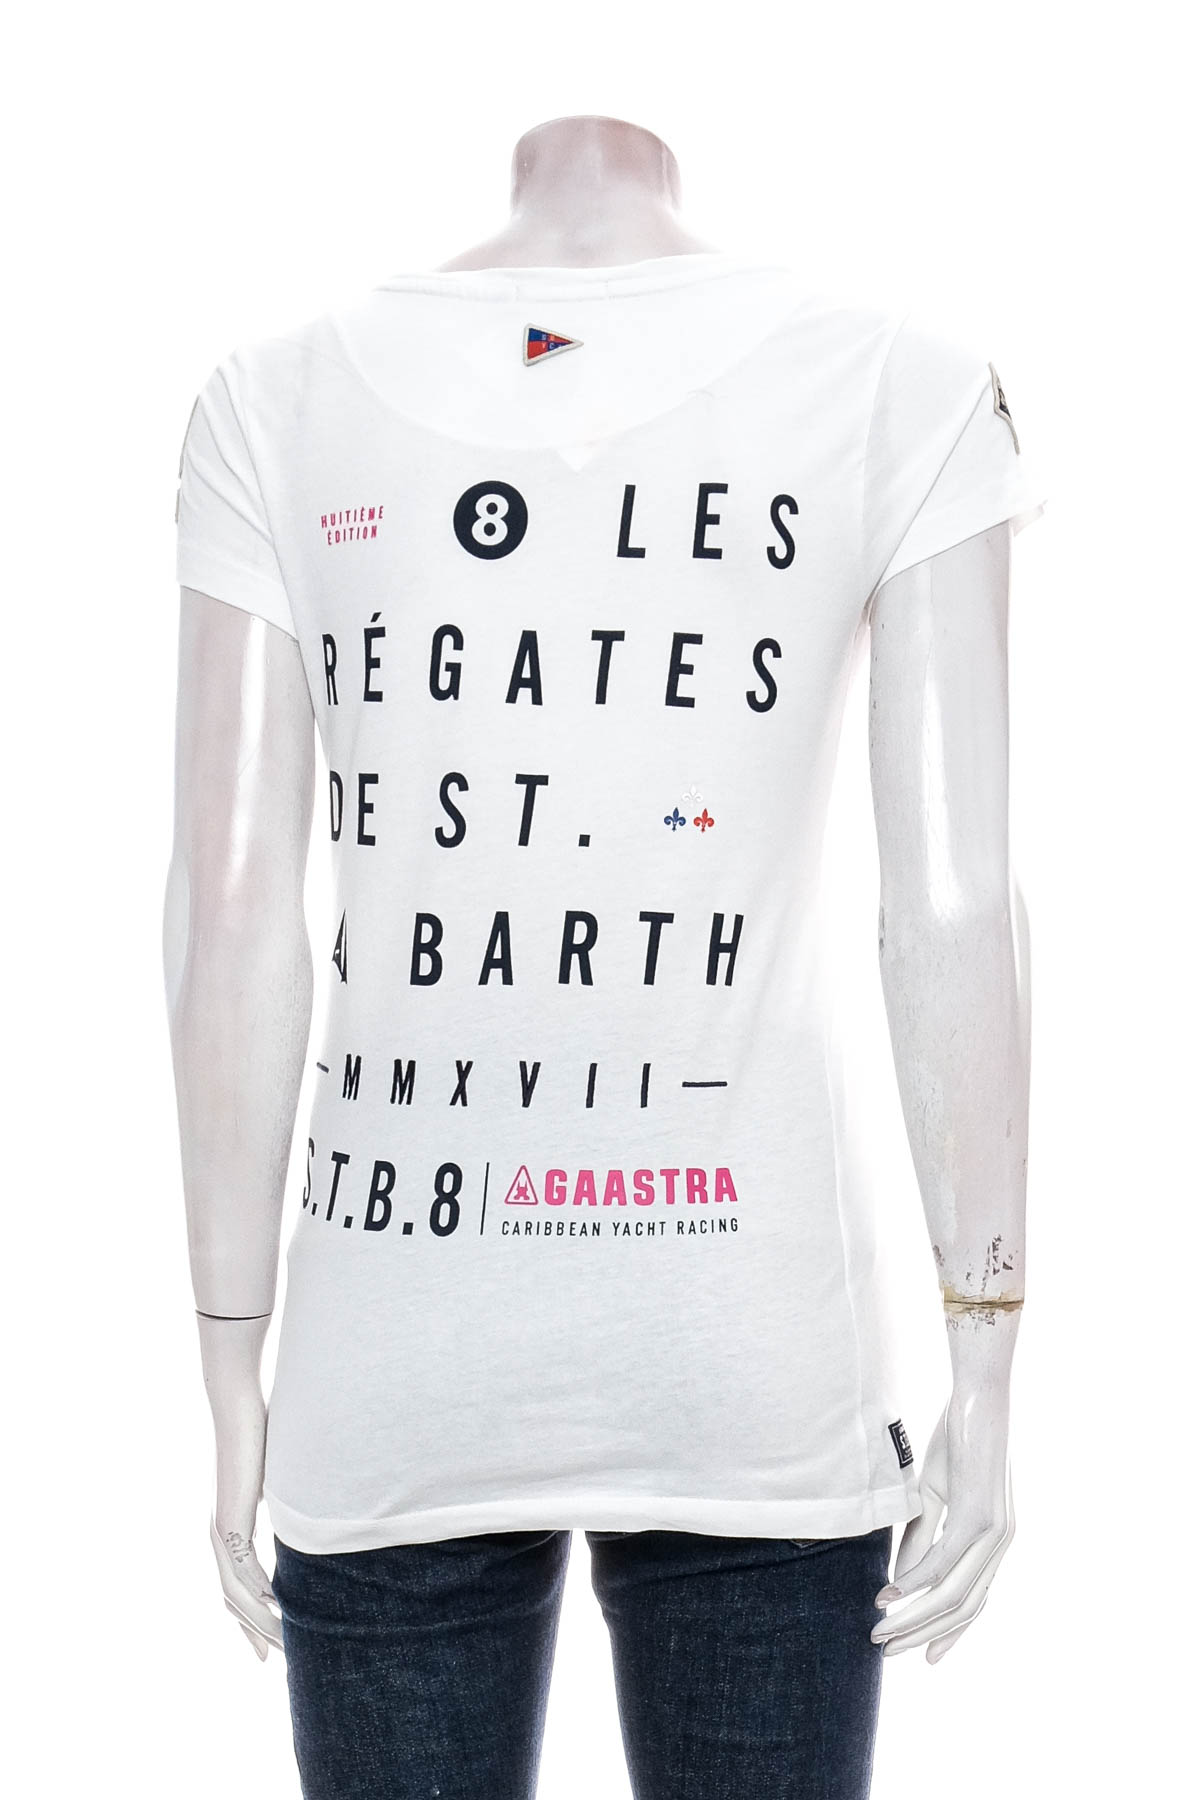 Γυναικεία μπλούζα - Gaastra - 1